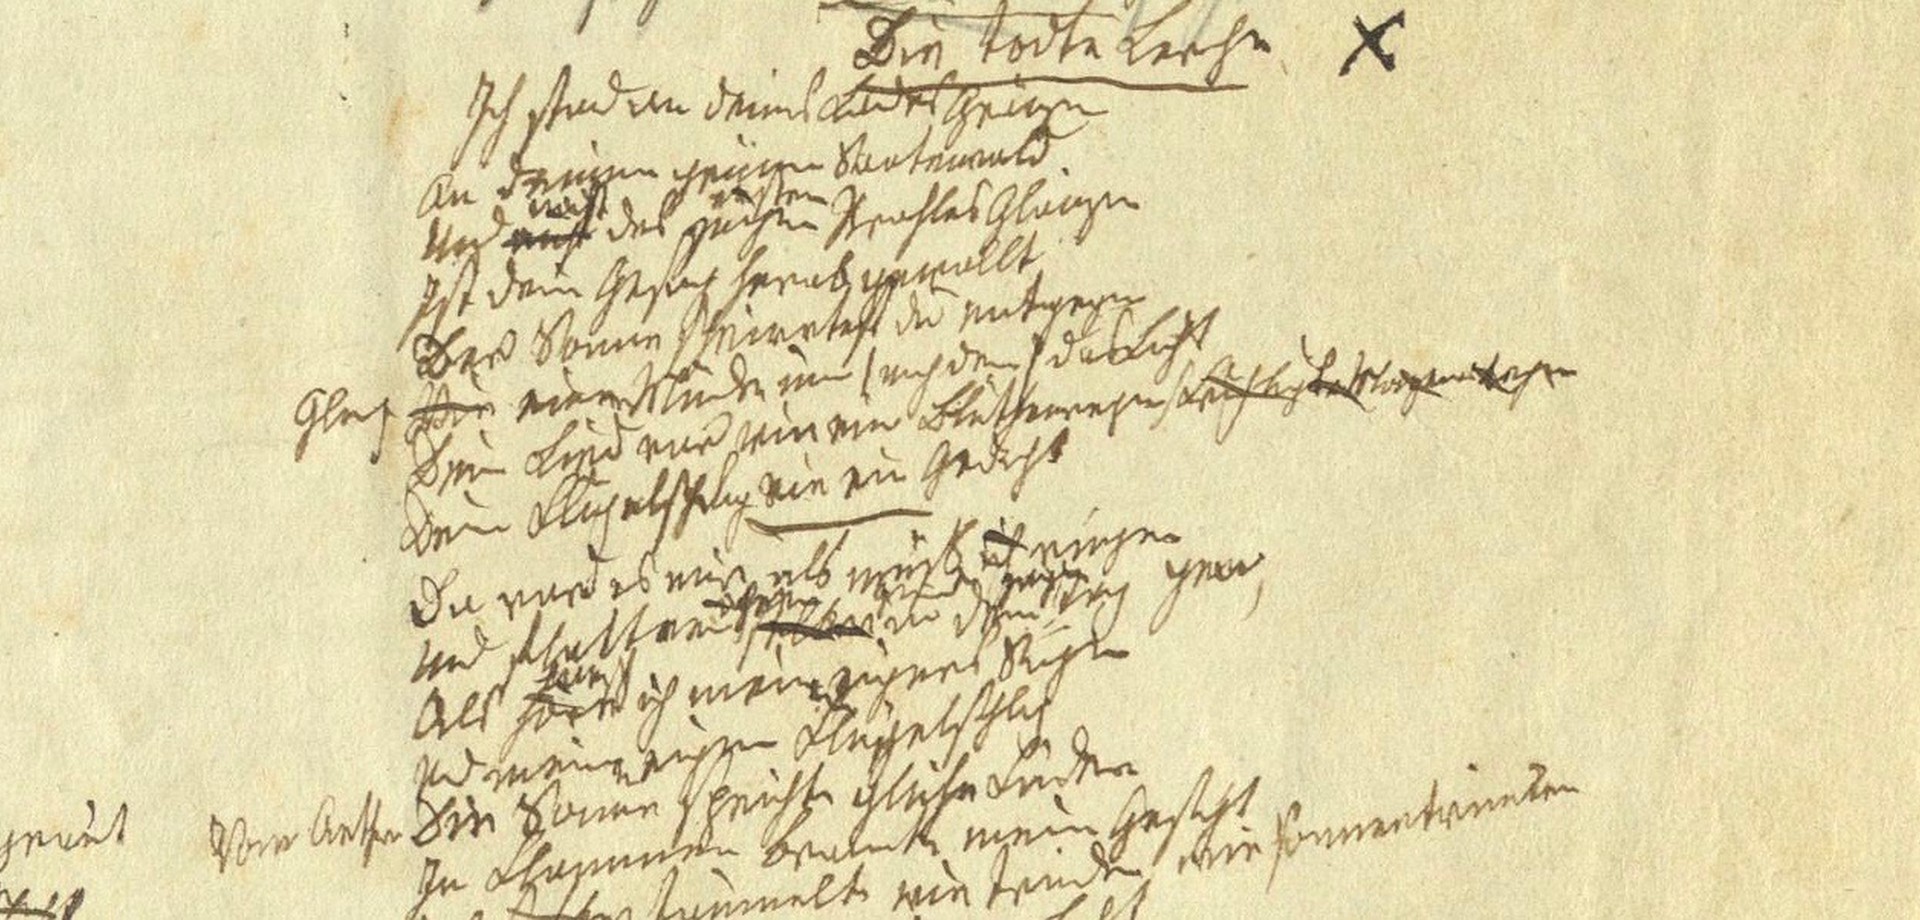 Ausschnitt aus Drostes Handschrift von "Die tote Lerche": Die Schrift ist klein und sehr unübersichtlich.